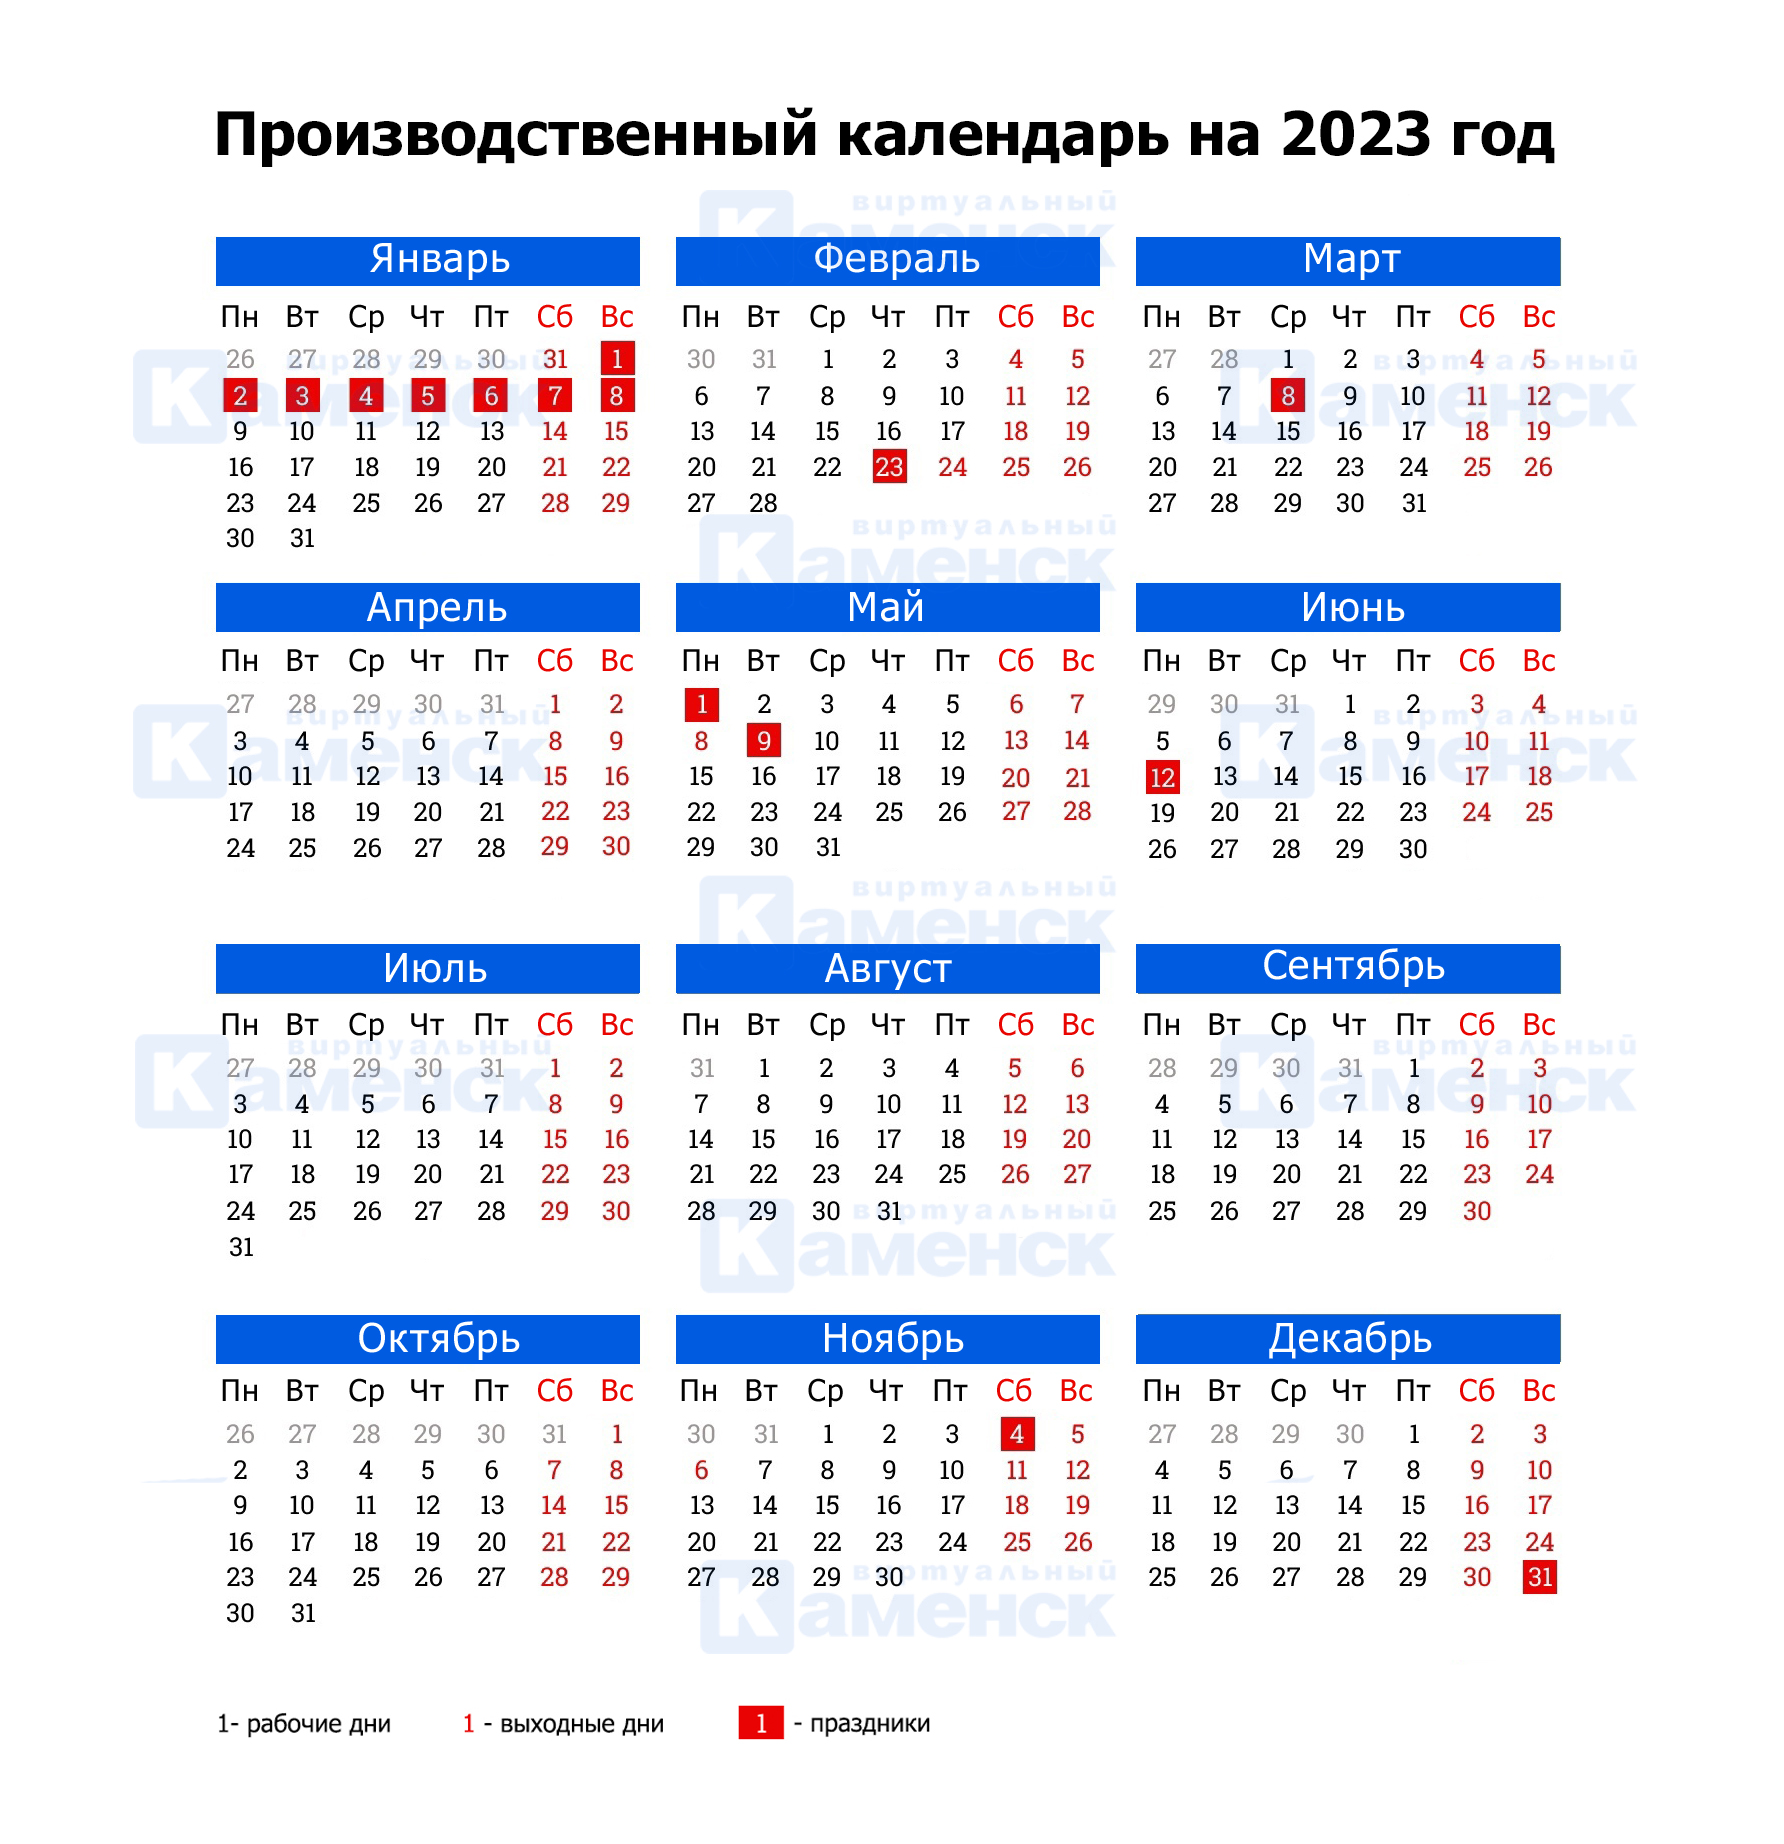 Календарь 2023 2 2. Производственный календарь на 2023 год. Рабочий календарь на 2023 год. Производственный на 2023 год. Производственный календарь февраль 2023.